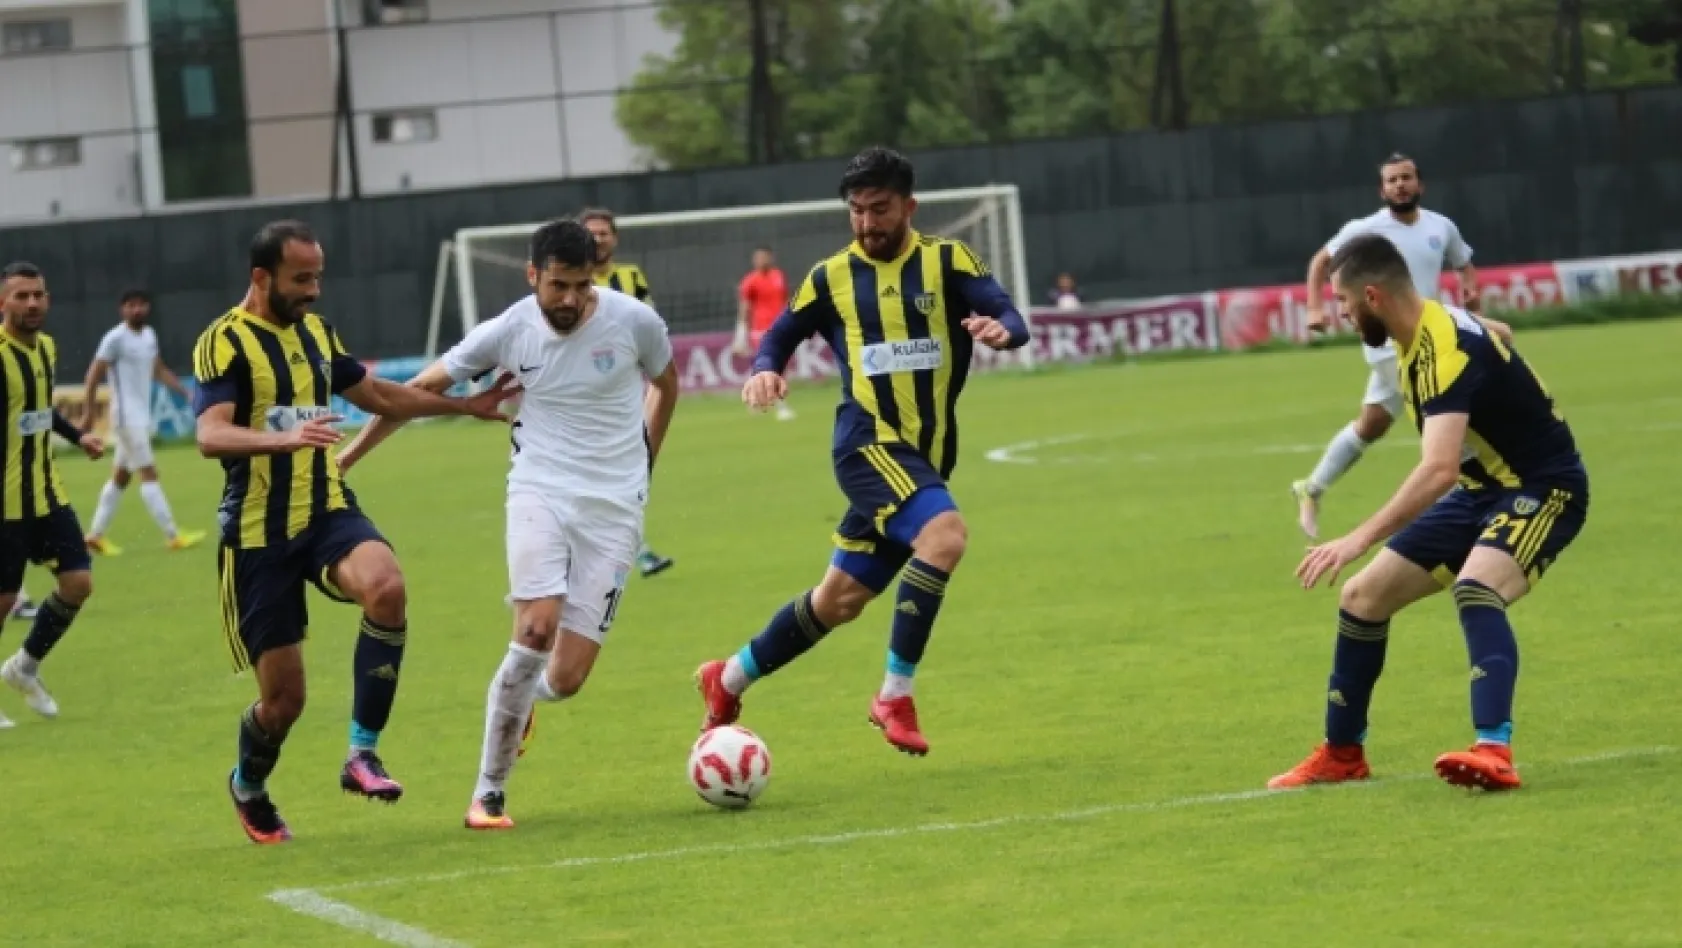 Elaziz Belediyespor - Tarsus İdmanyurdu maçından özel kareler